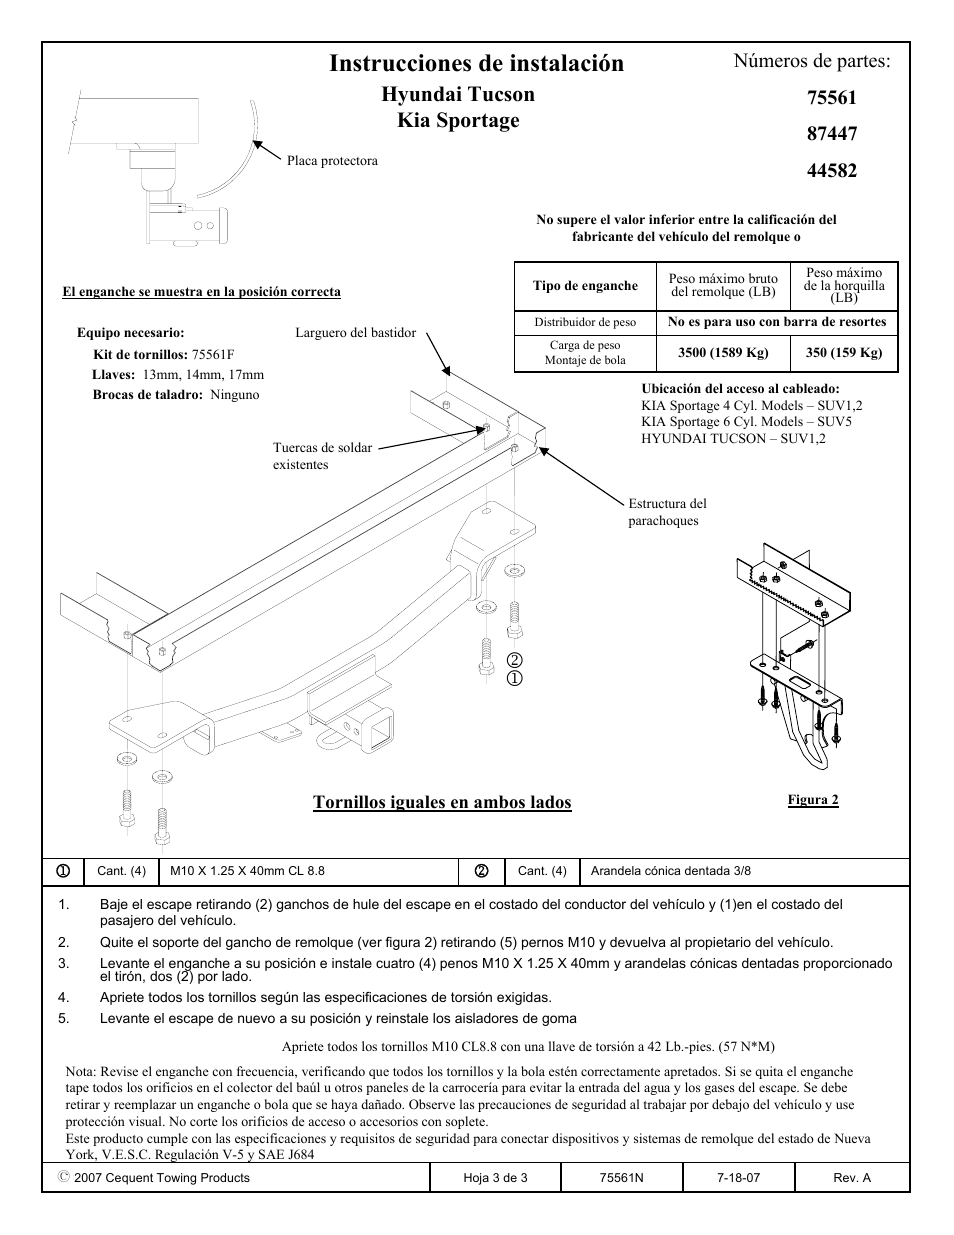 Instrucciones de instalación, Hyundai tucson kia sportage, Números de  partes | Reese 44582 PROFESSIONAL RECEIVER User Manual | Page 3 / 3